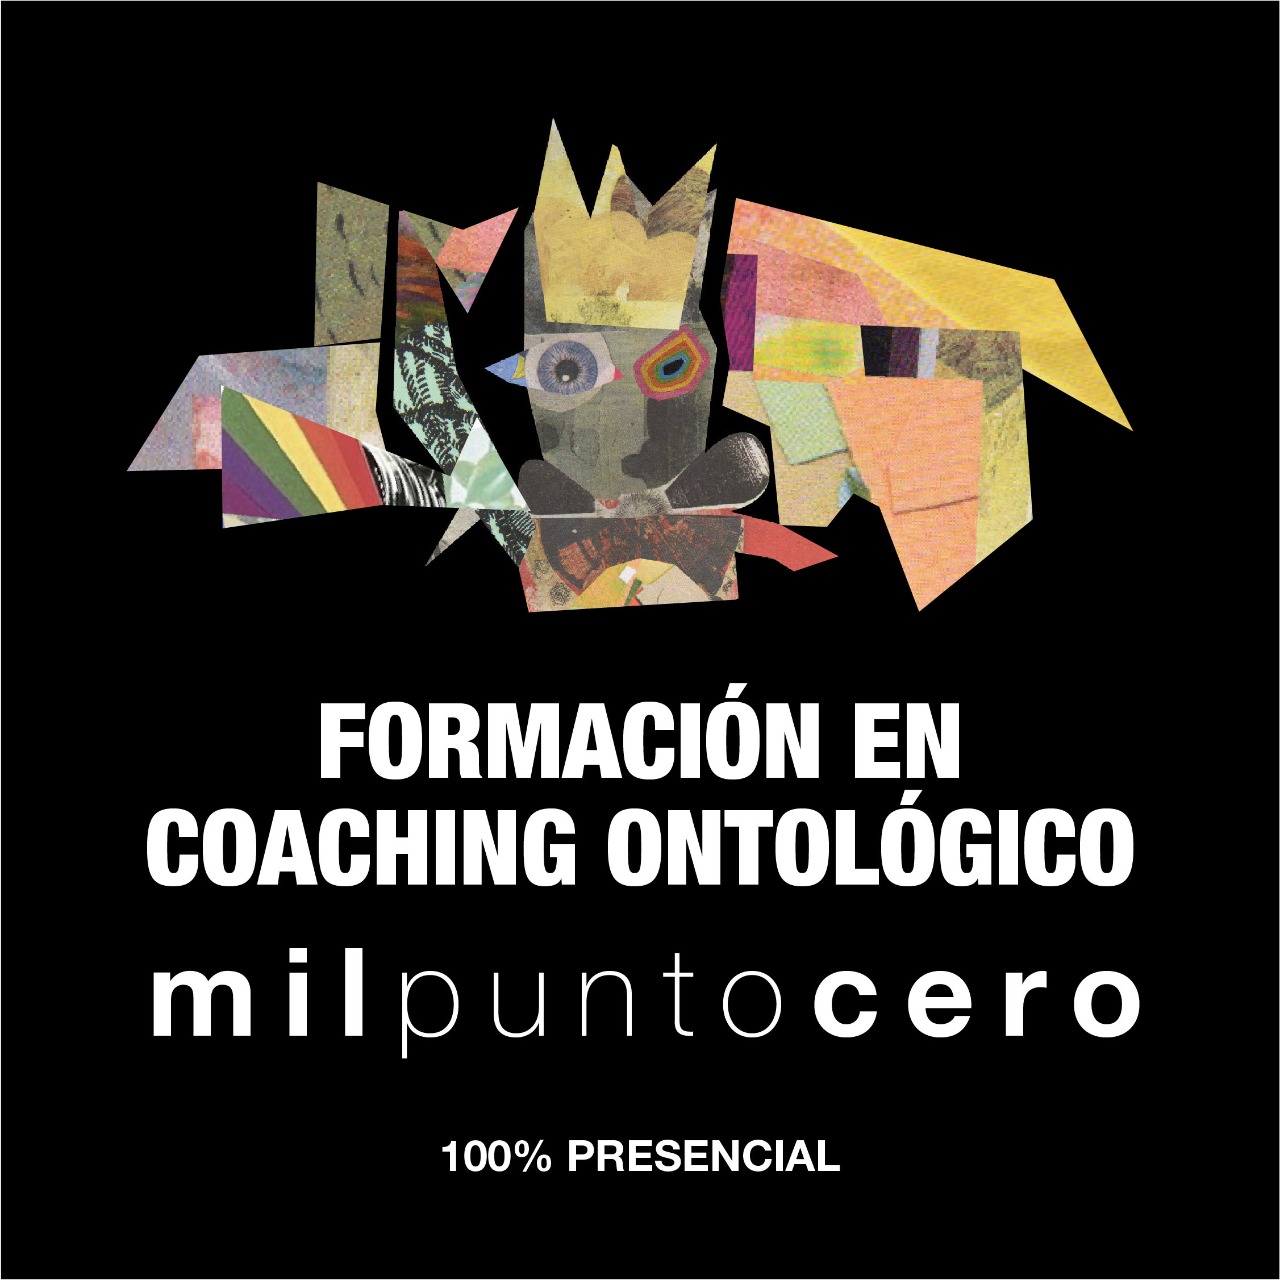 MILPUNTOCERO – Formación en Coaching Ontológico